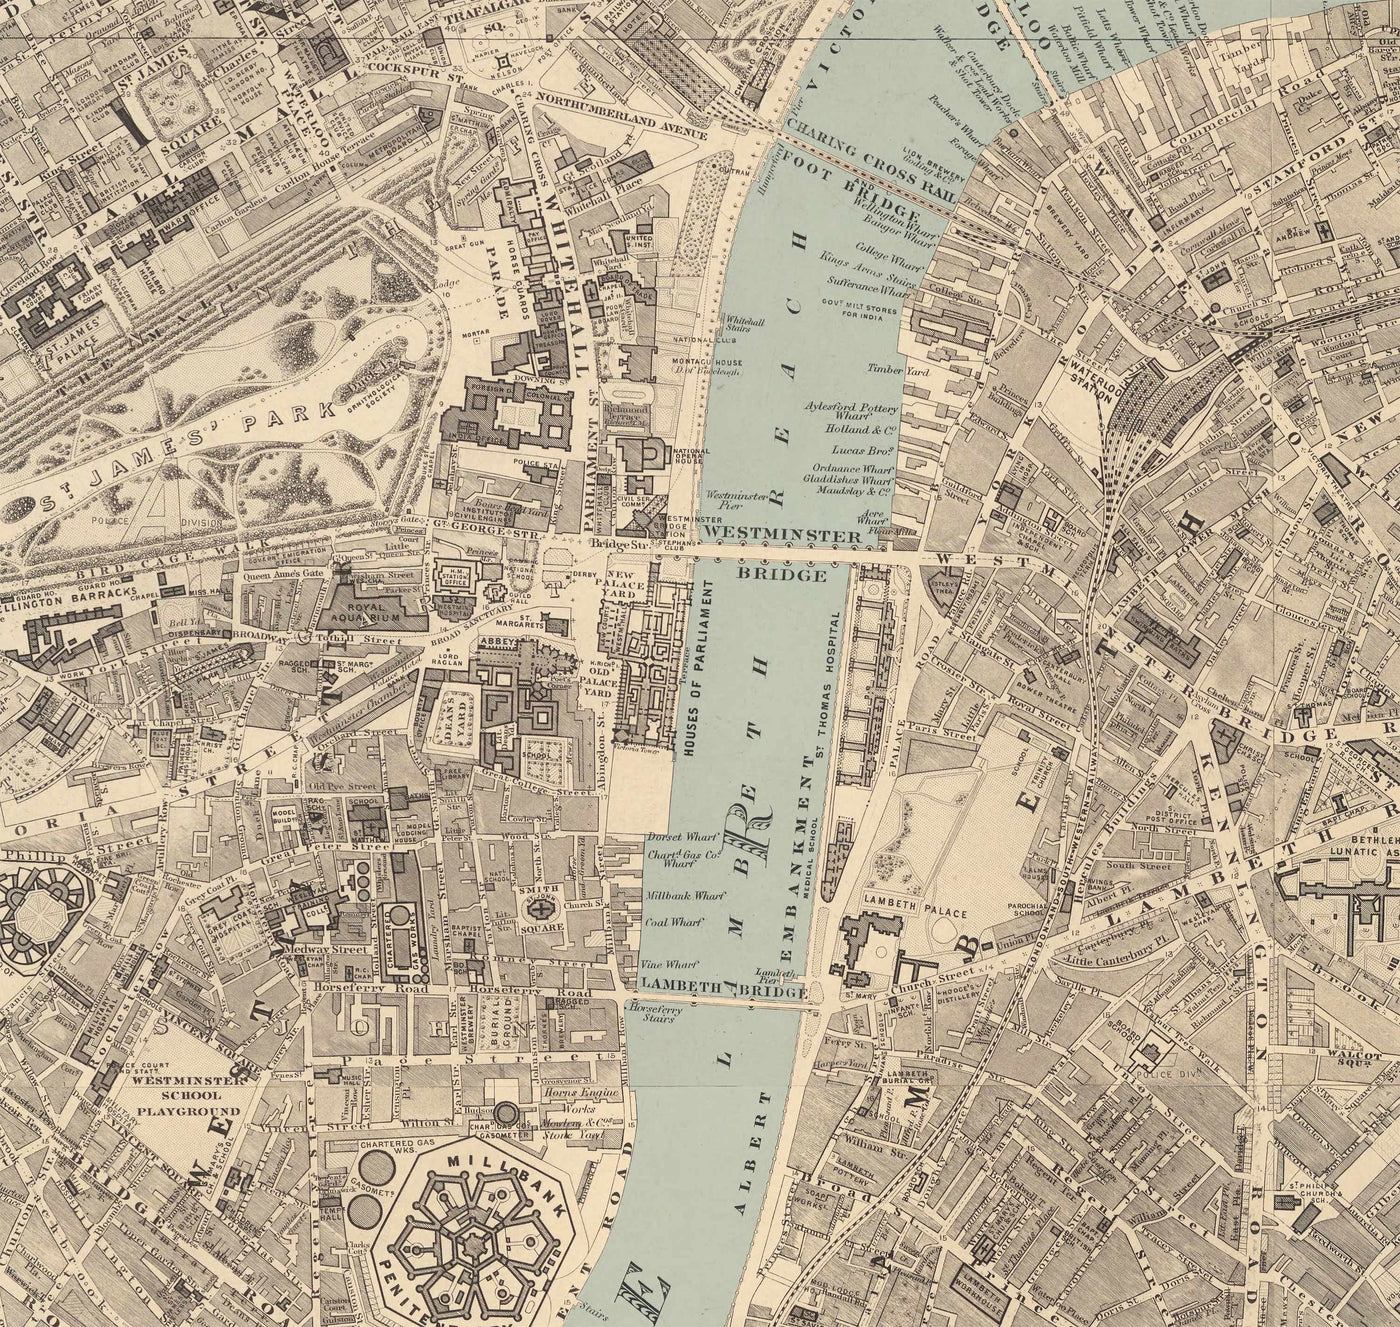 Gran mapa antiguo de Londres de Edward Stanford (1862, 1891) - Monocromo, Támesis azul o coloreado a mano